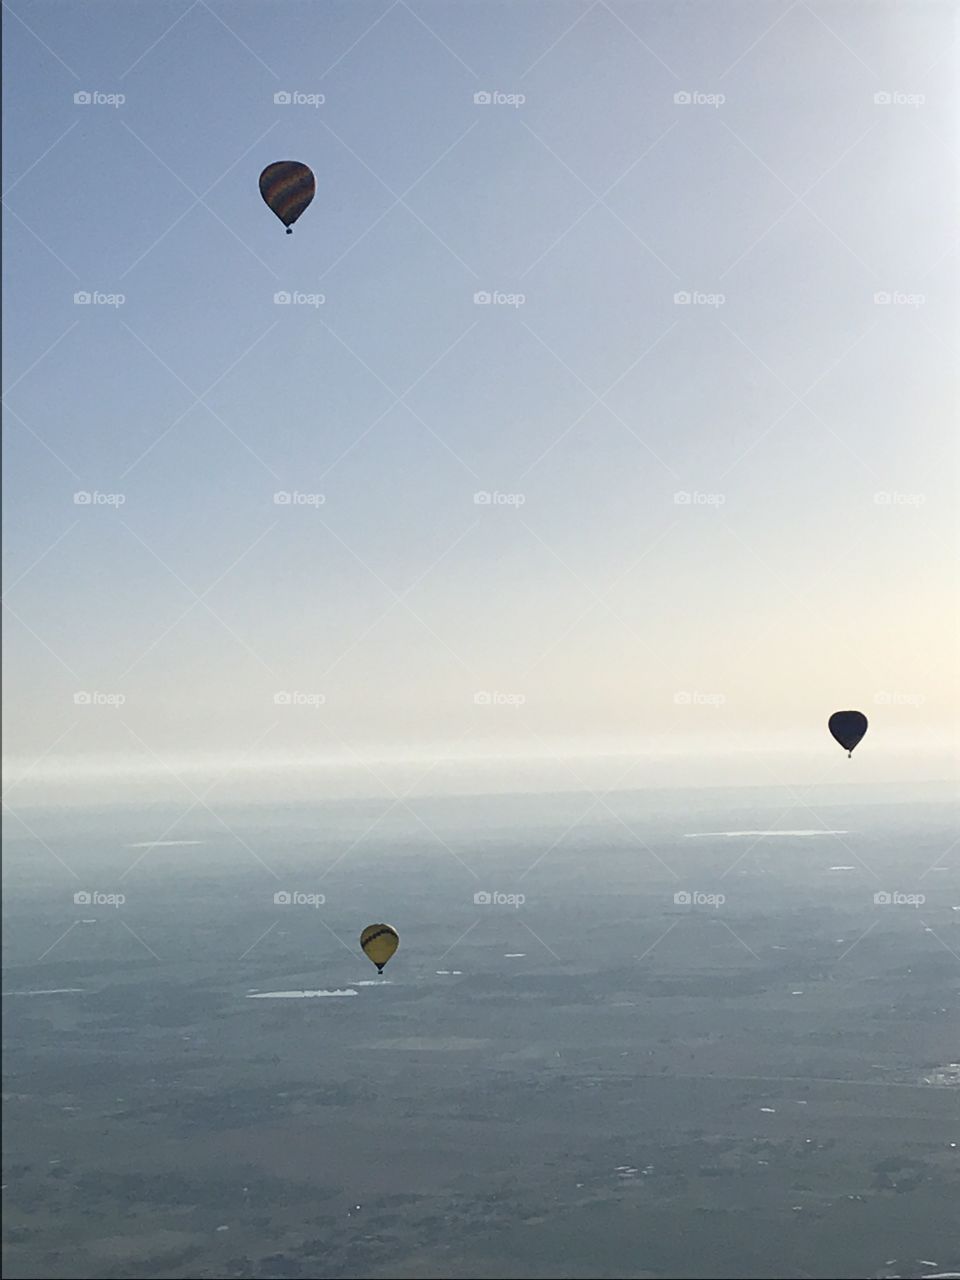 Balloon view